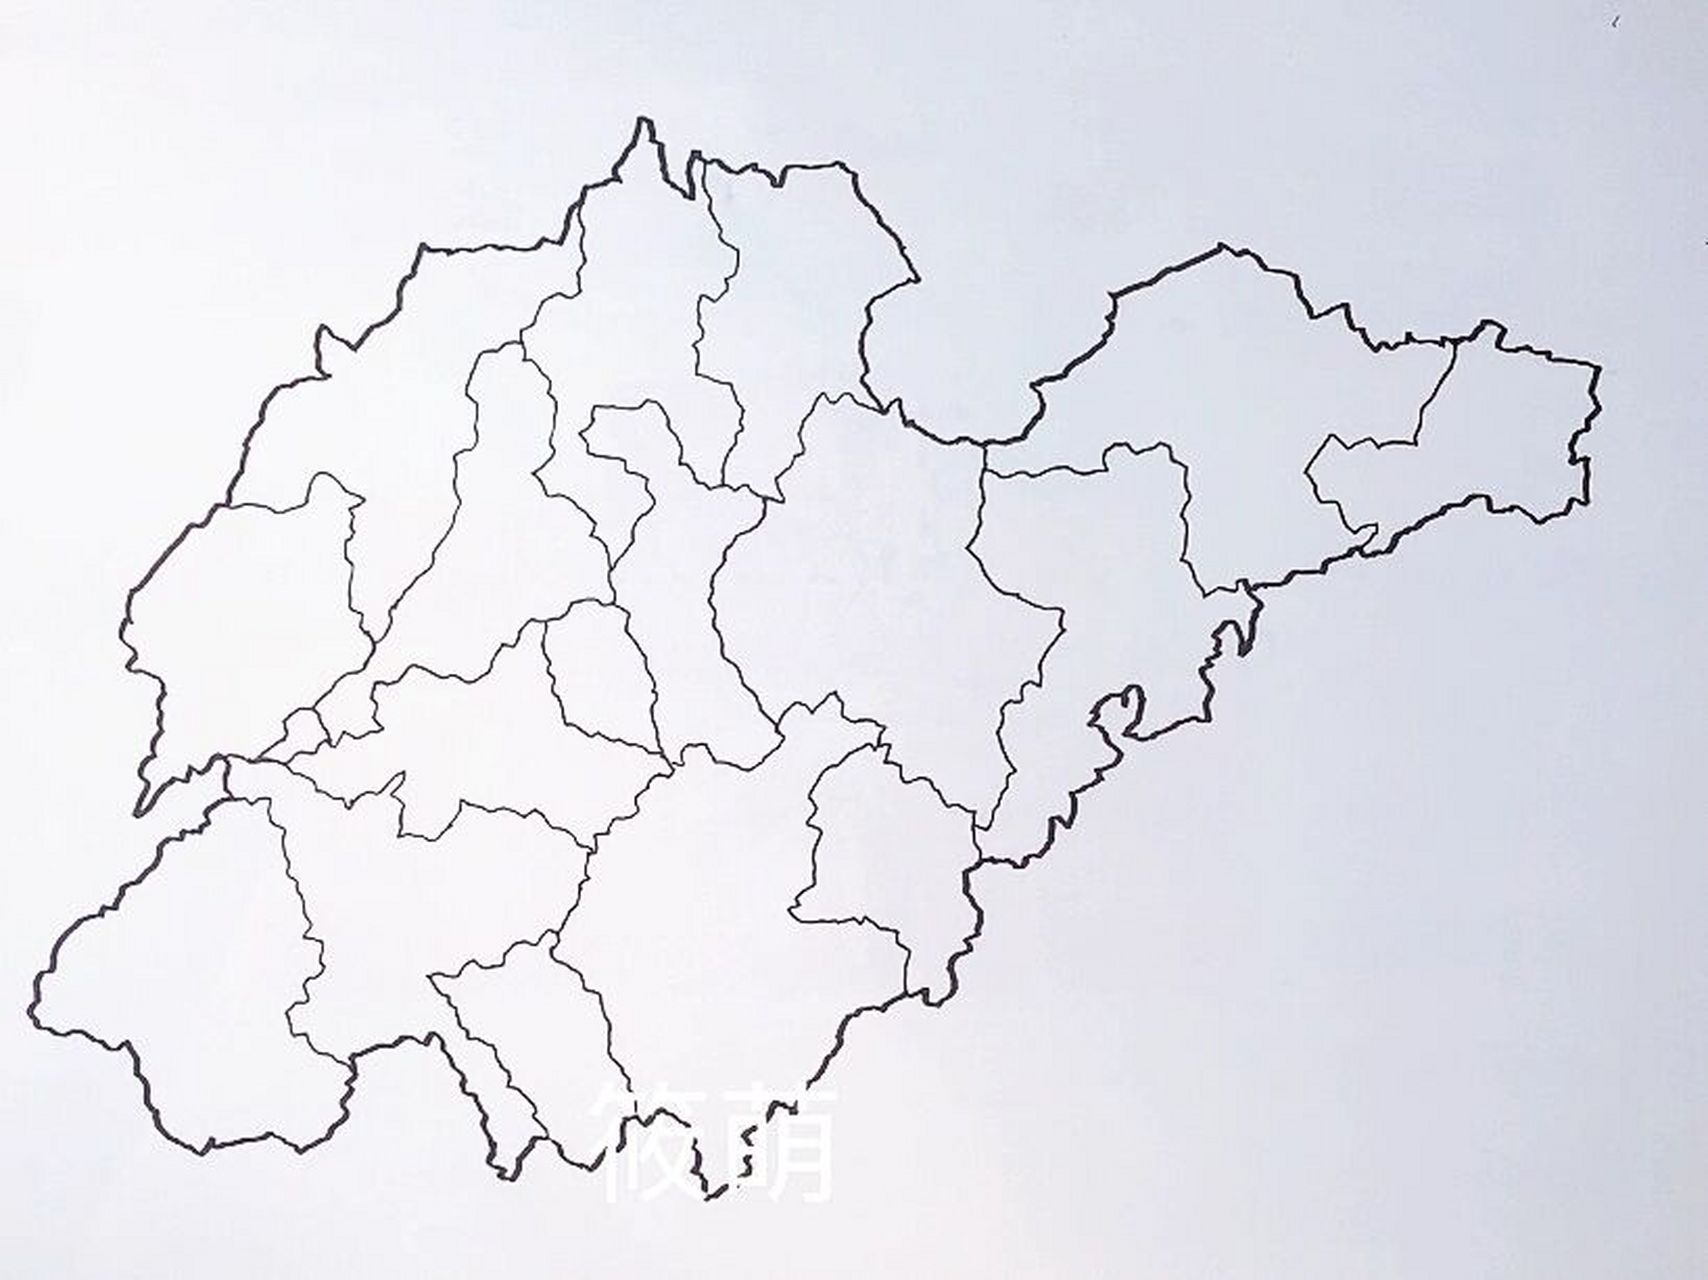 山东省地图